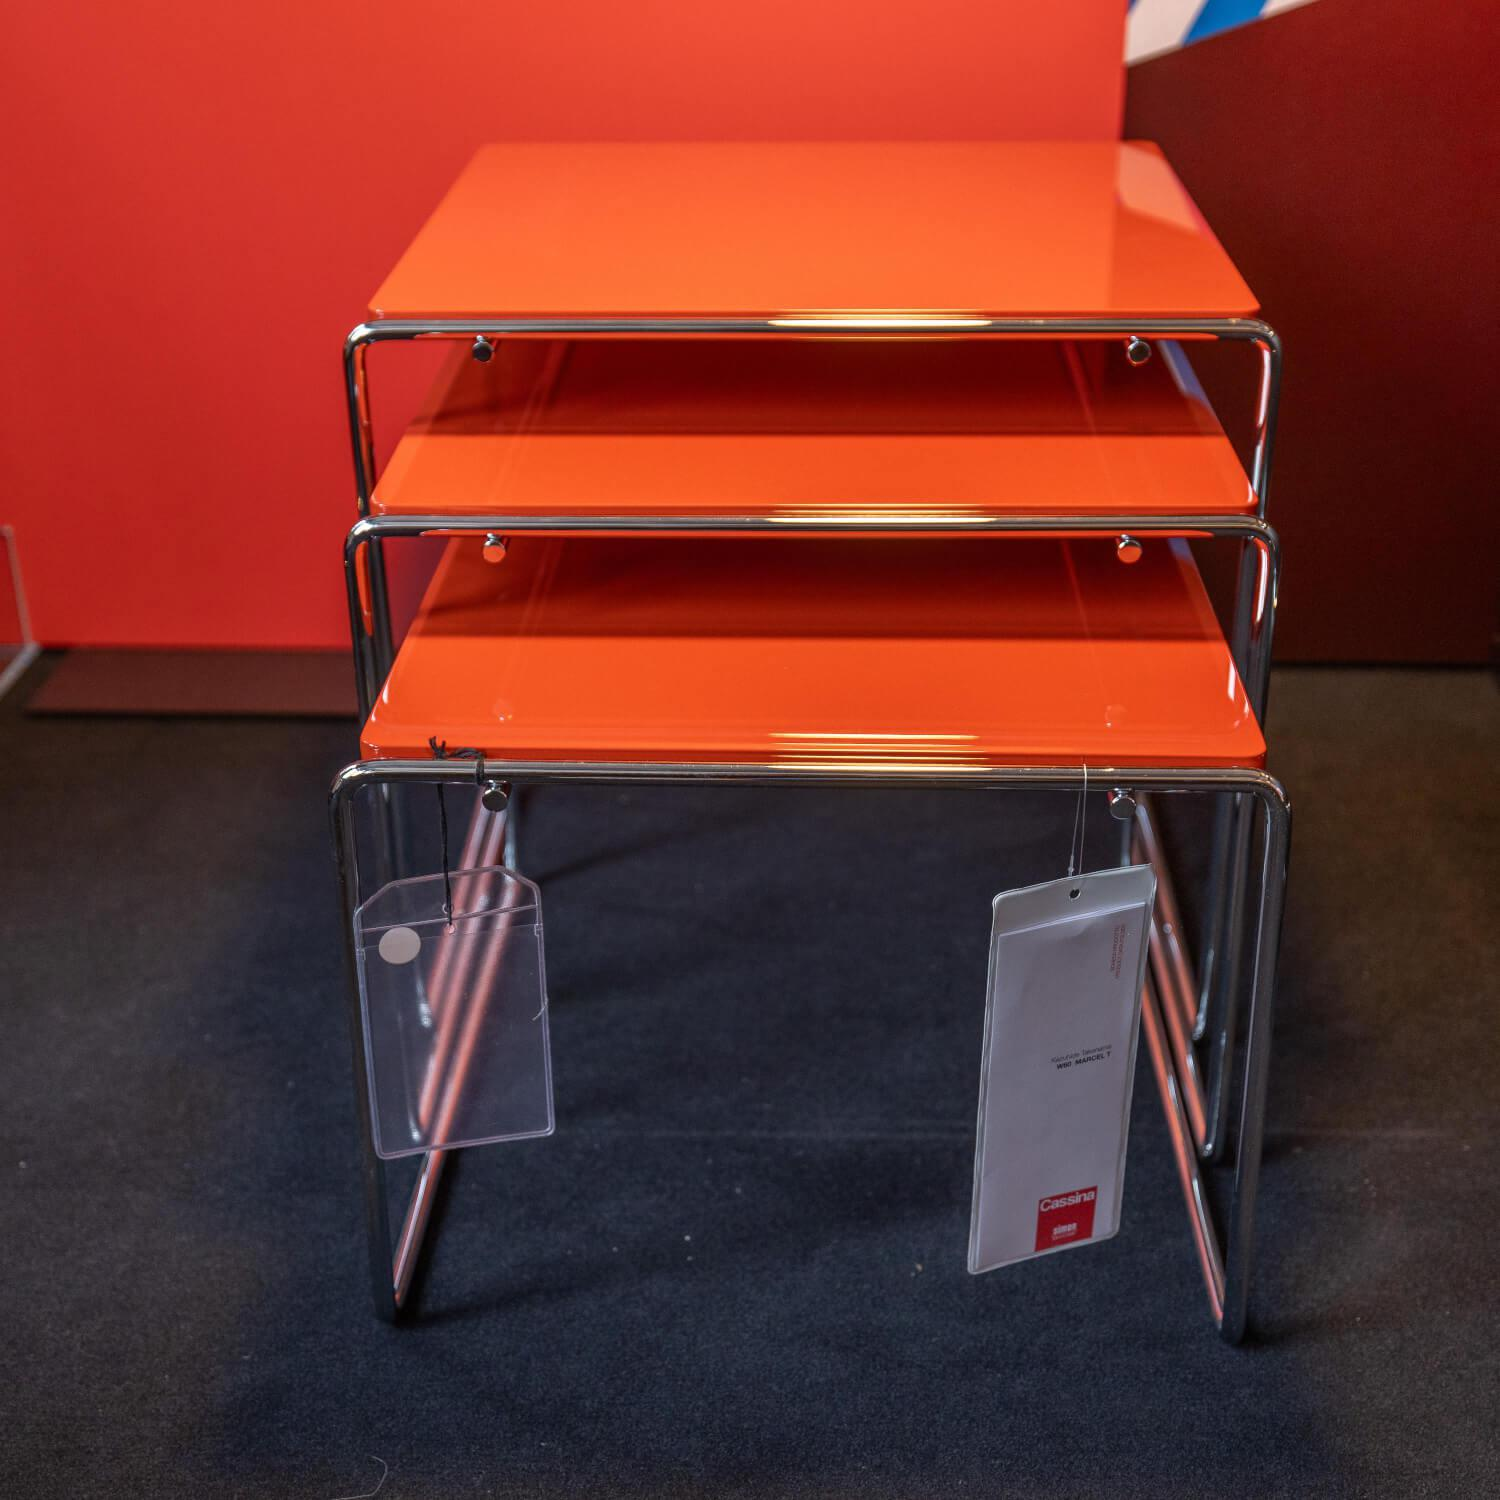 Beistelltisch-Set Marcel T Platte Hochglanzlack Orange Rot Gestell Stahl